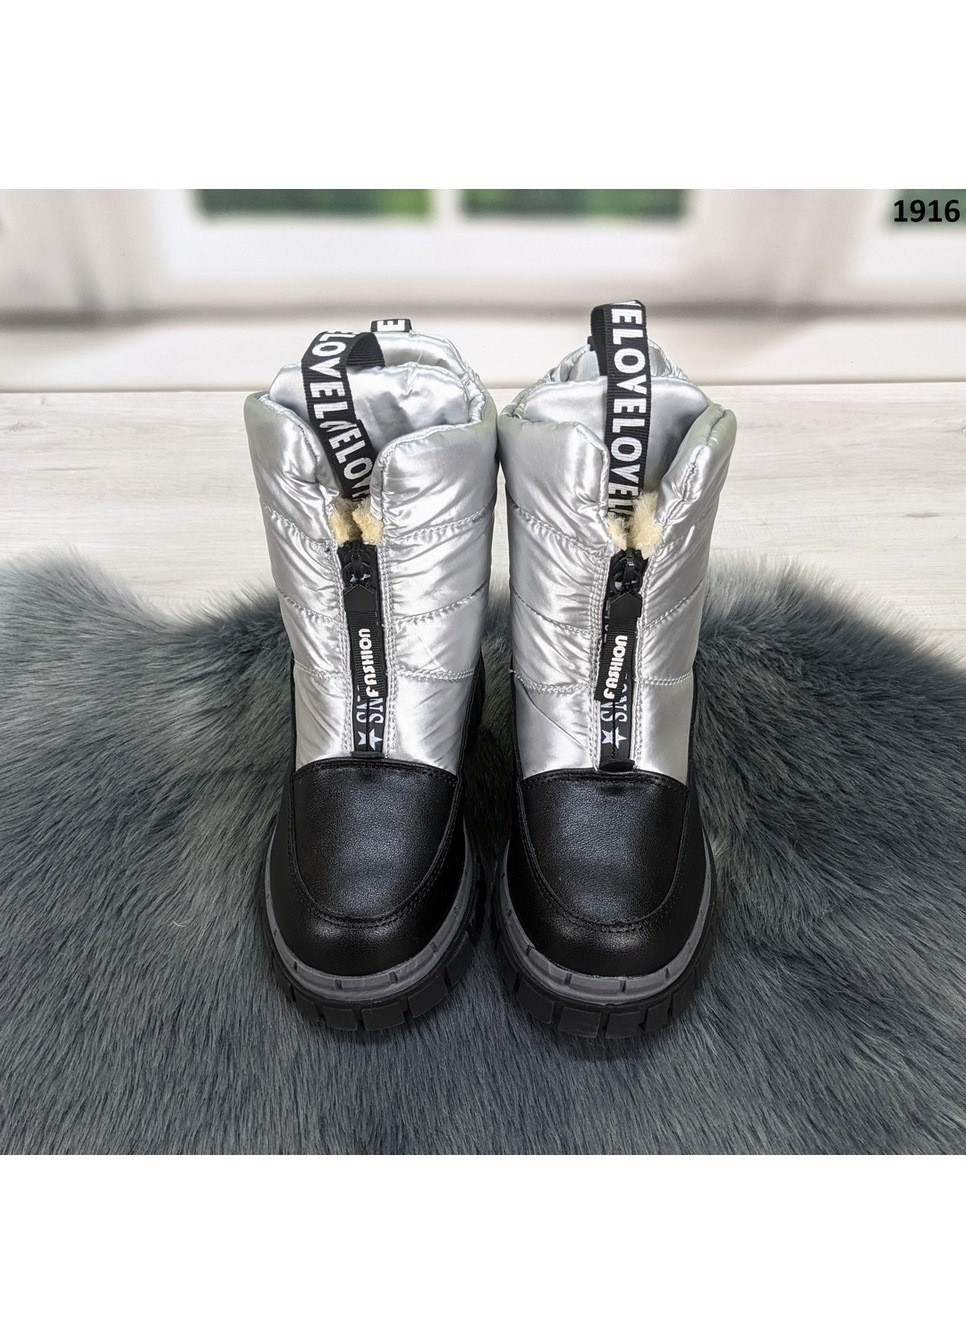 Серебряные повседневные зимние ботинки зимние детские для девочки Канарейка